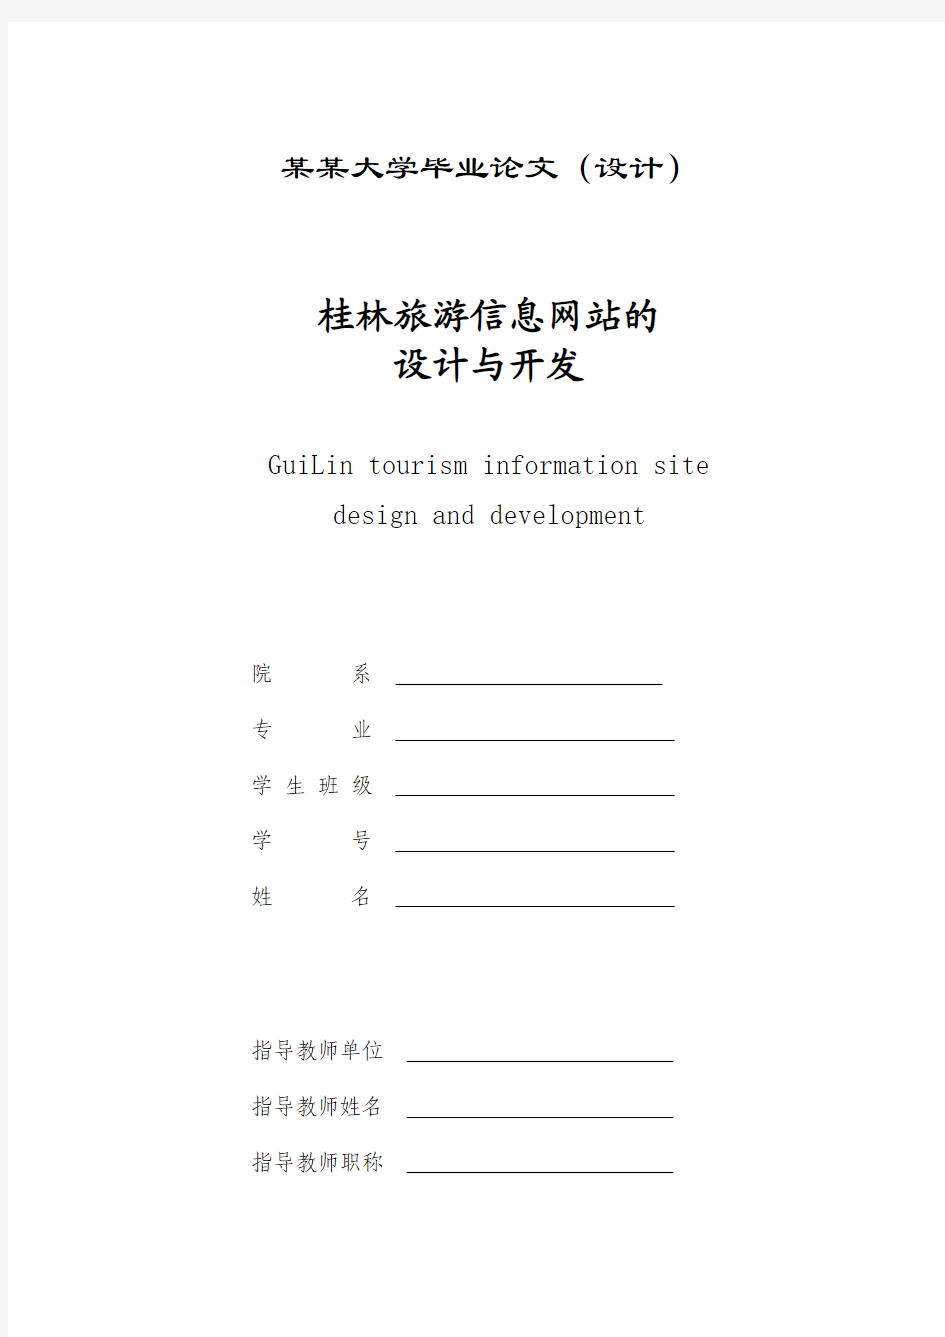 桂林旅游信息网站的设计与开发(毕业设计论文)